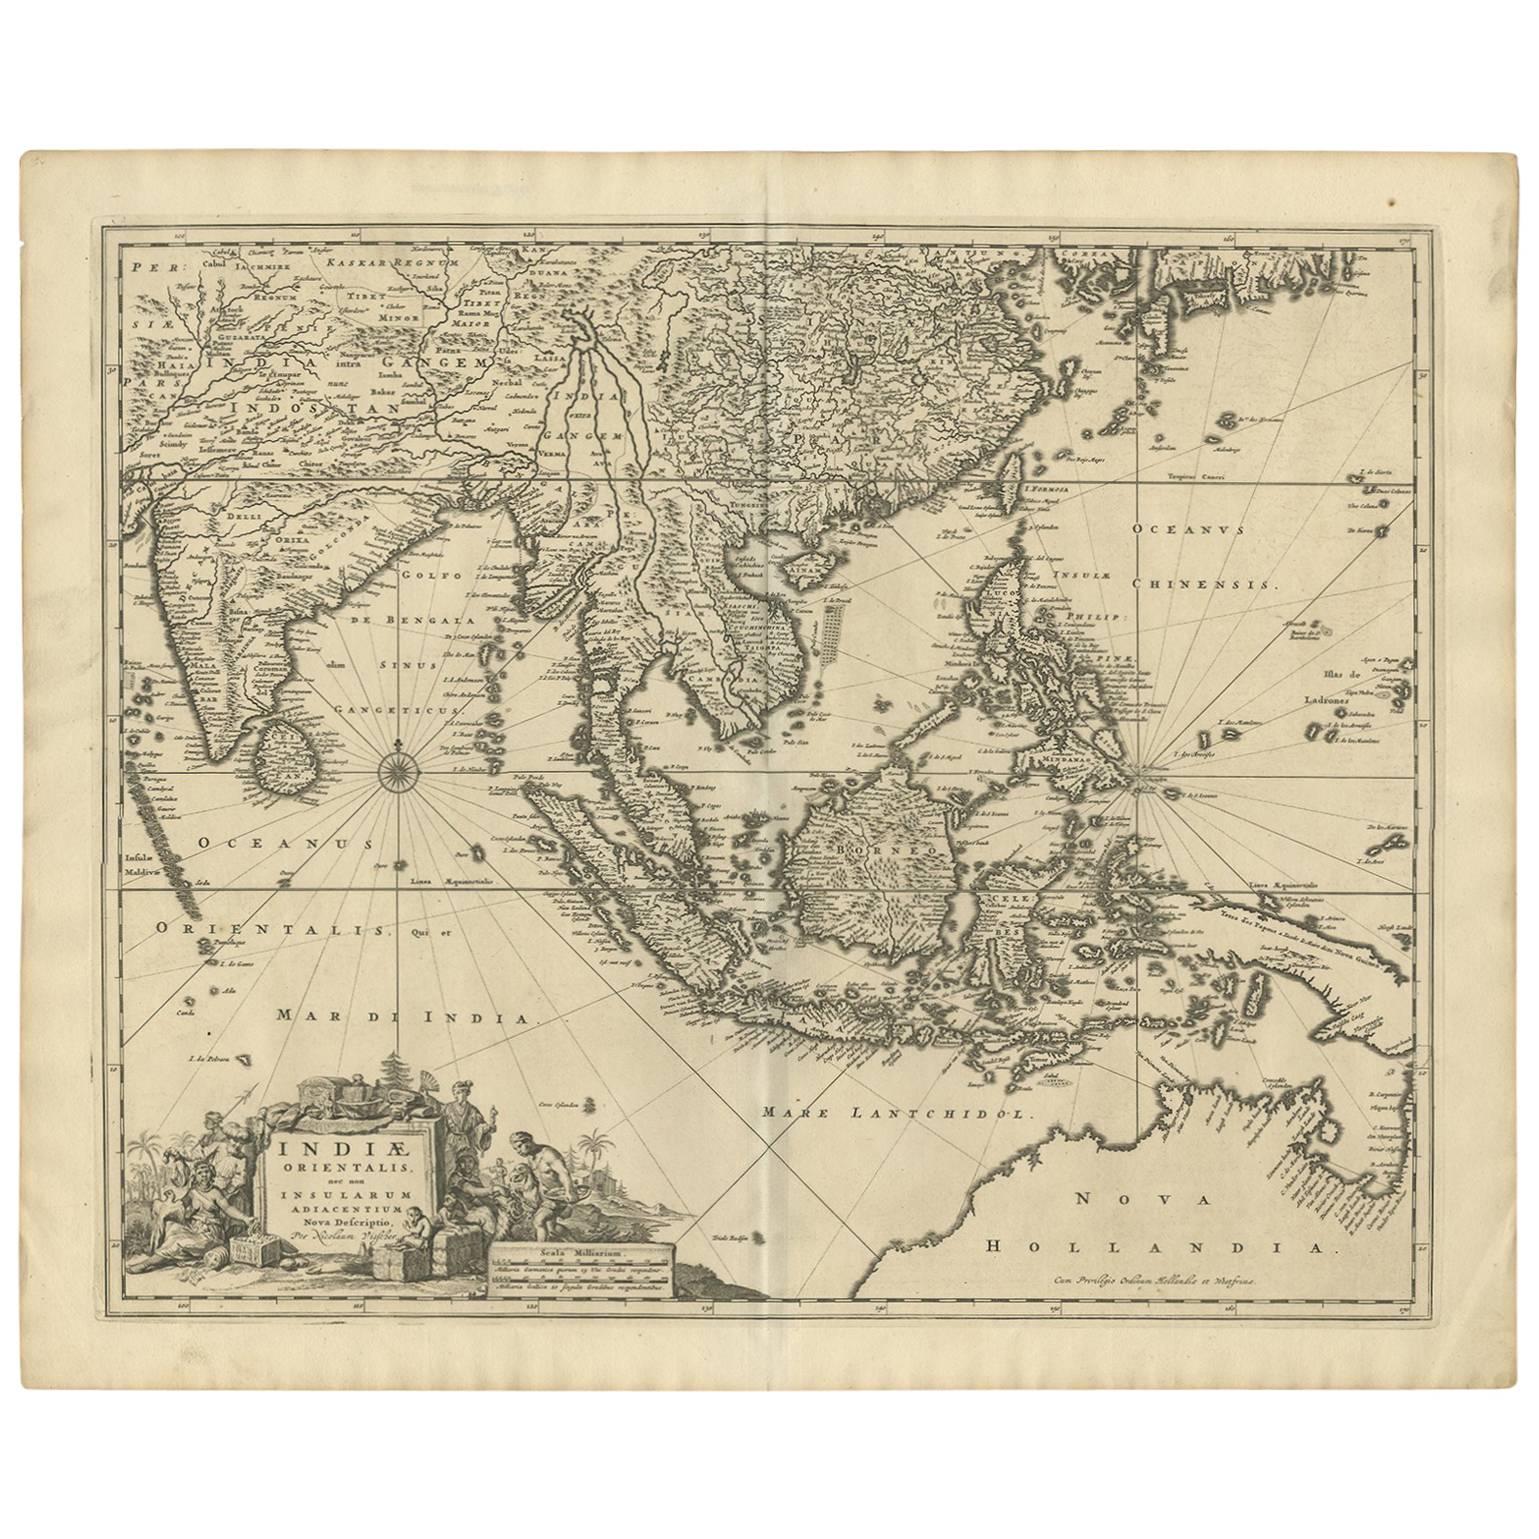 Carte ancienne de l'Asie du Sud-Est (Inde, Indonésie) par N. Visscher, vers 1670